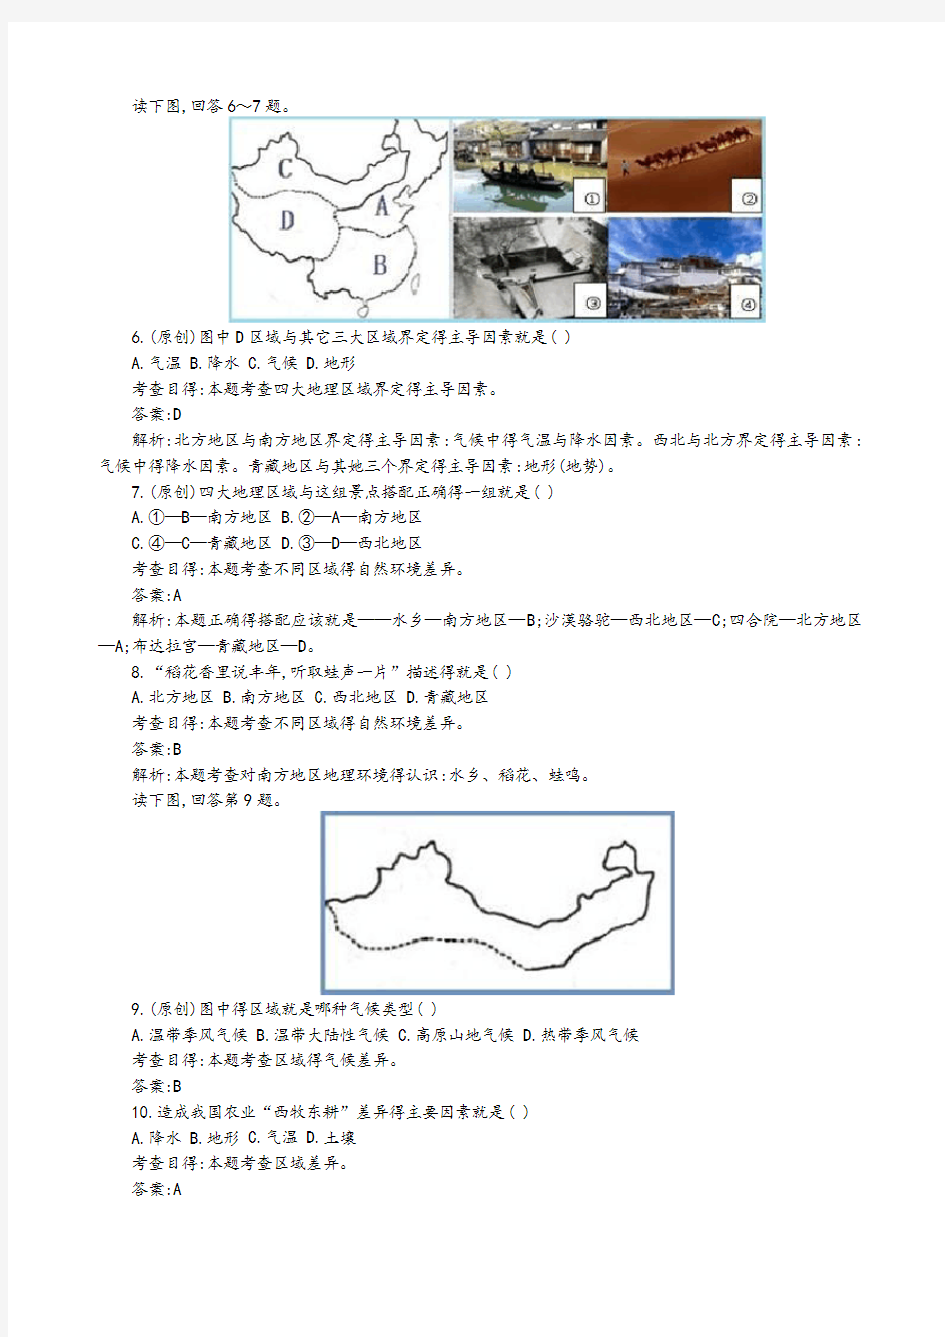 中国的地理差异测试题